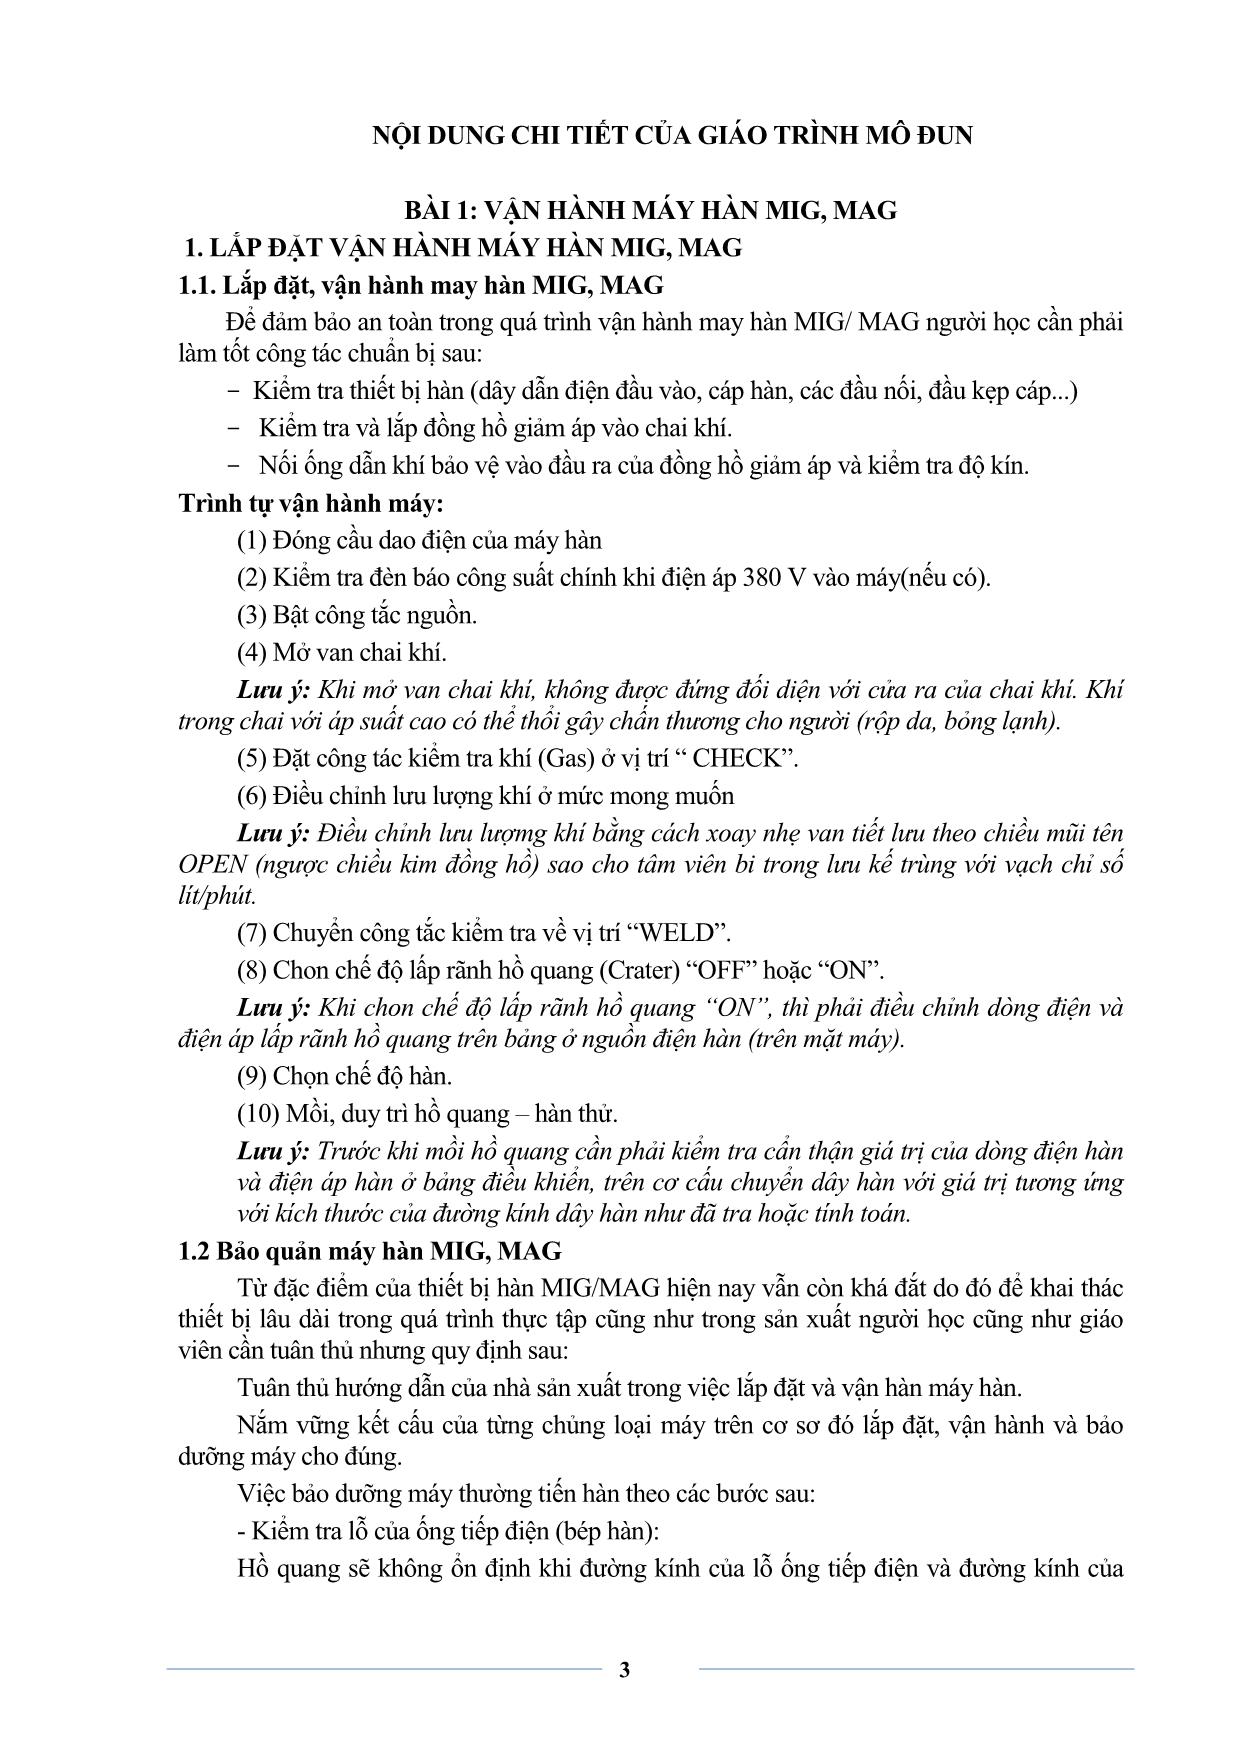 Giáo trình Hàn MIG-MAG cơ bản trang 5